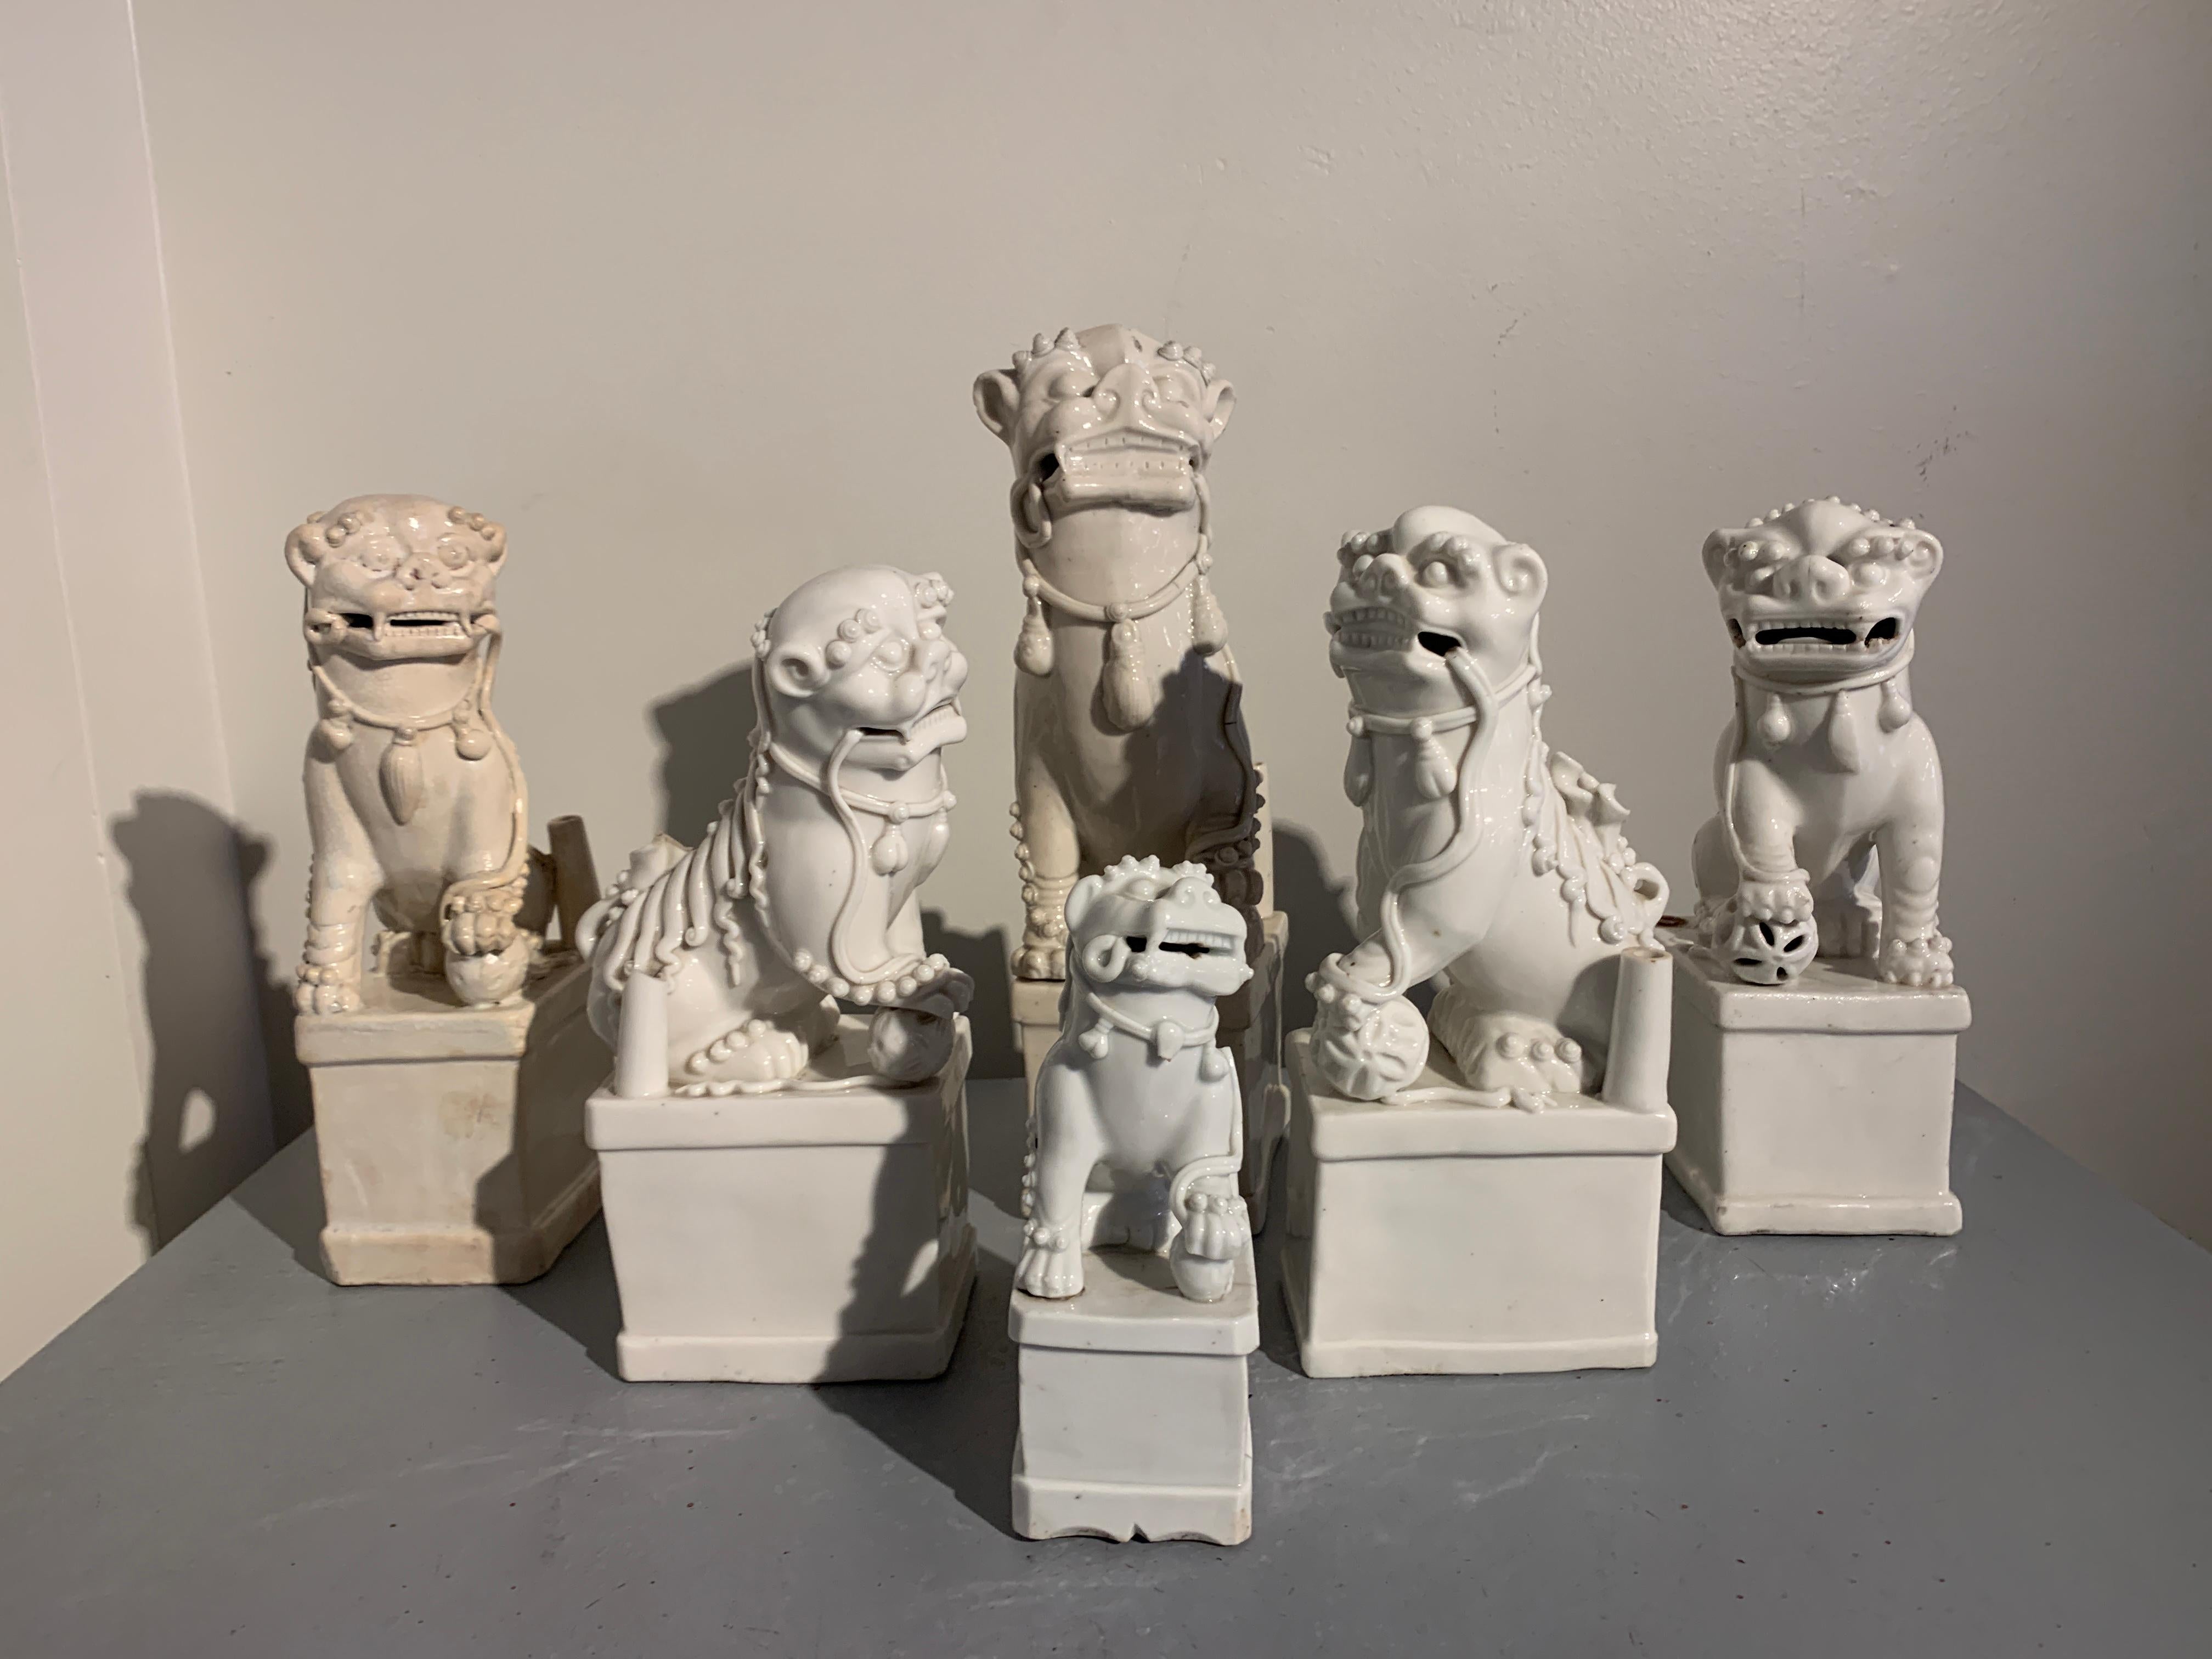 Ensemble absolument magnifique de porte-bougies en porcelaine Blanc de Chine à décor de lion bouddhiste (foo lion, foo dog), dynastie Qing, fin 17e - fin 19e siècles, Chine.

Cette meute de foo dogs assemblés est merveilleusement charmante et